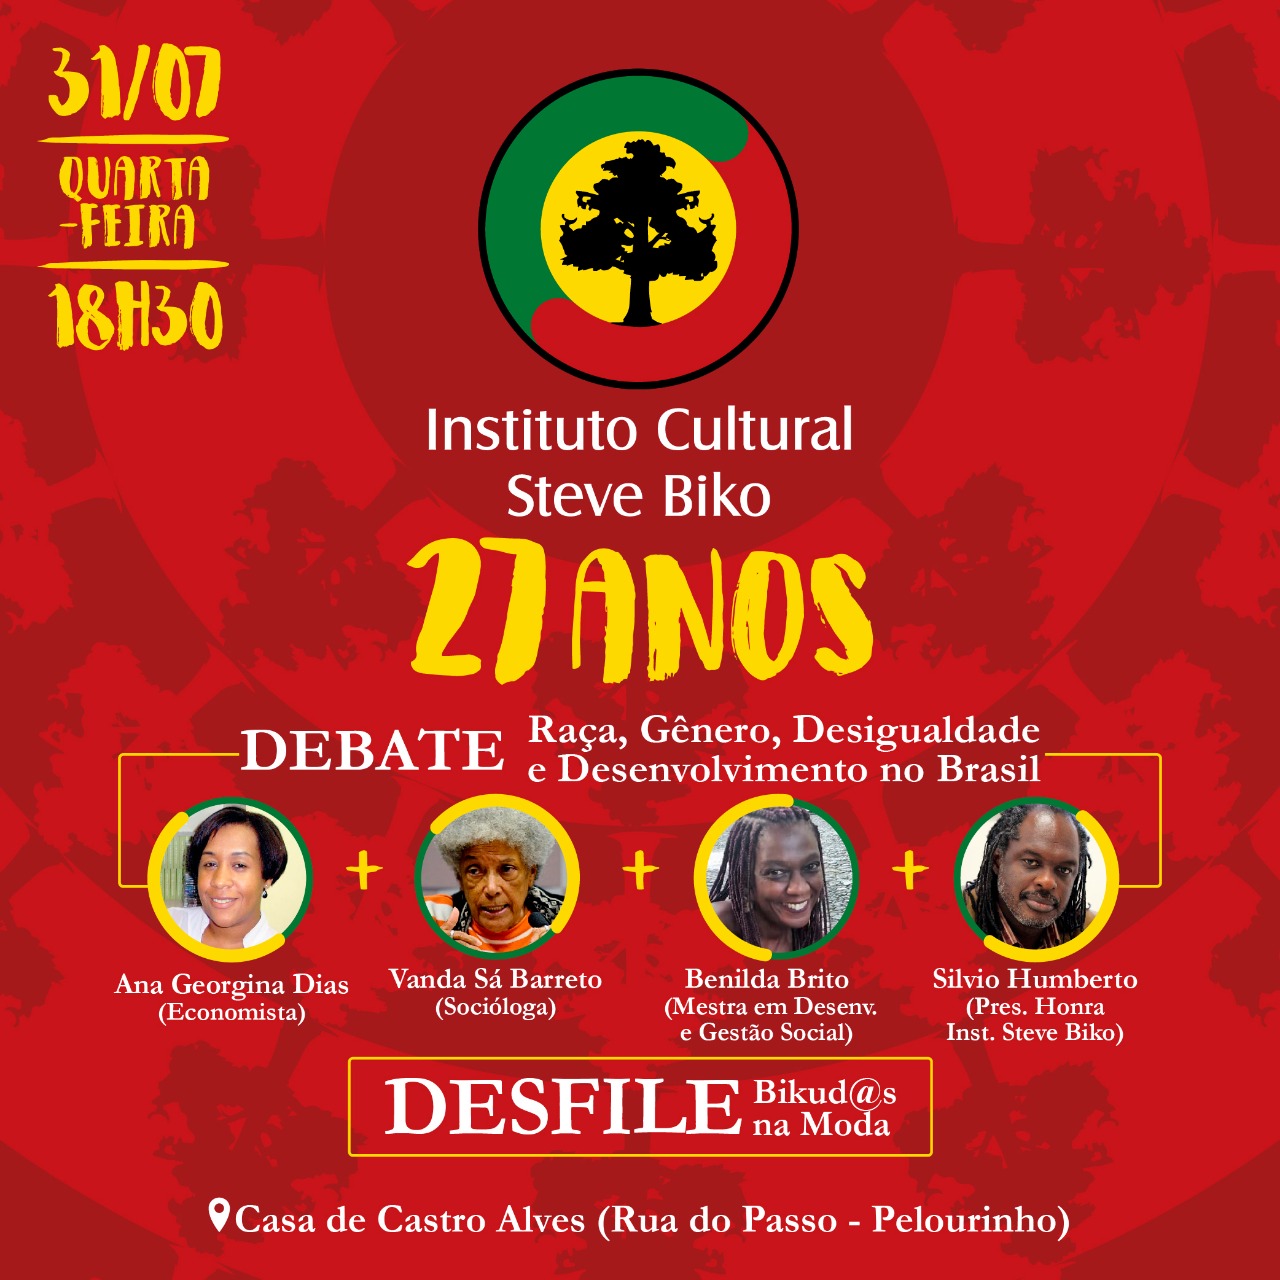 Instituto Steve Biko celebra 27 anos com palestra e desfile de empreendimentos negros